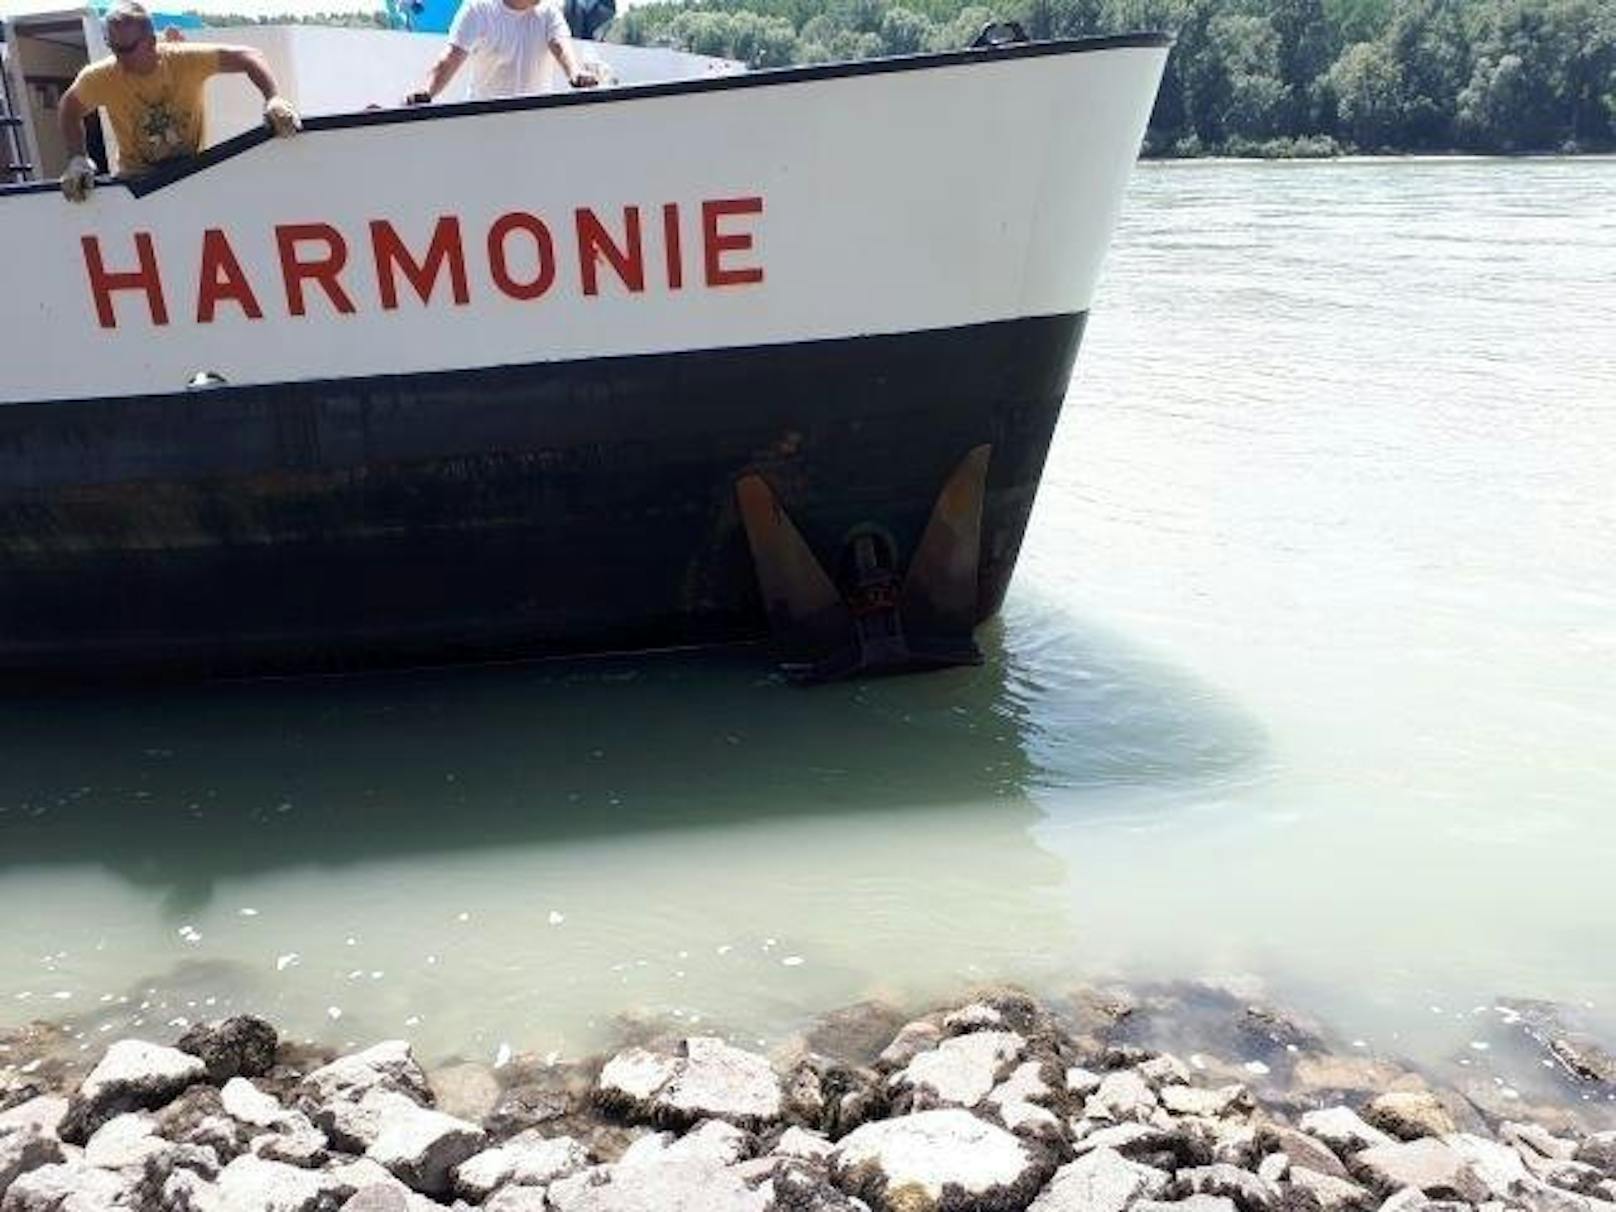 Ein Schiff dürfte seine Ankerkette in der Donau verloren haben, der Frachter "Harmonie" verfing sich und blieb hängen.